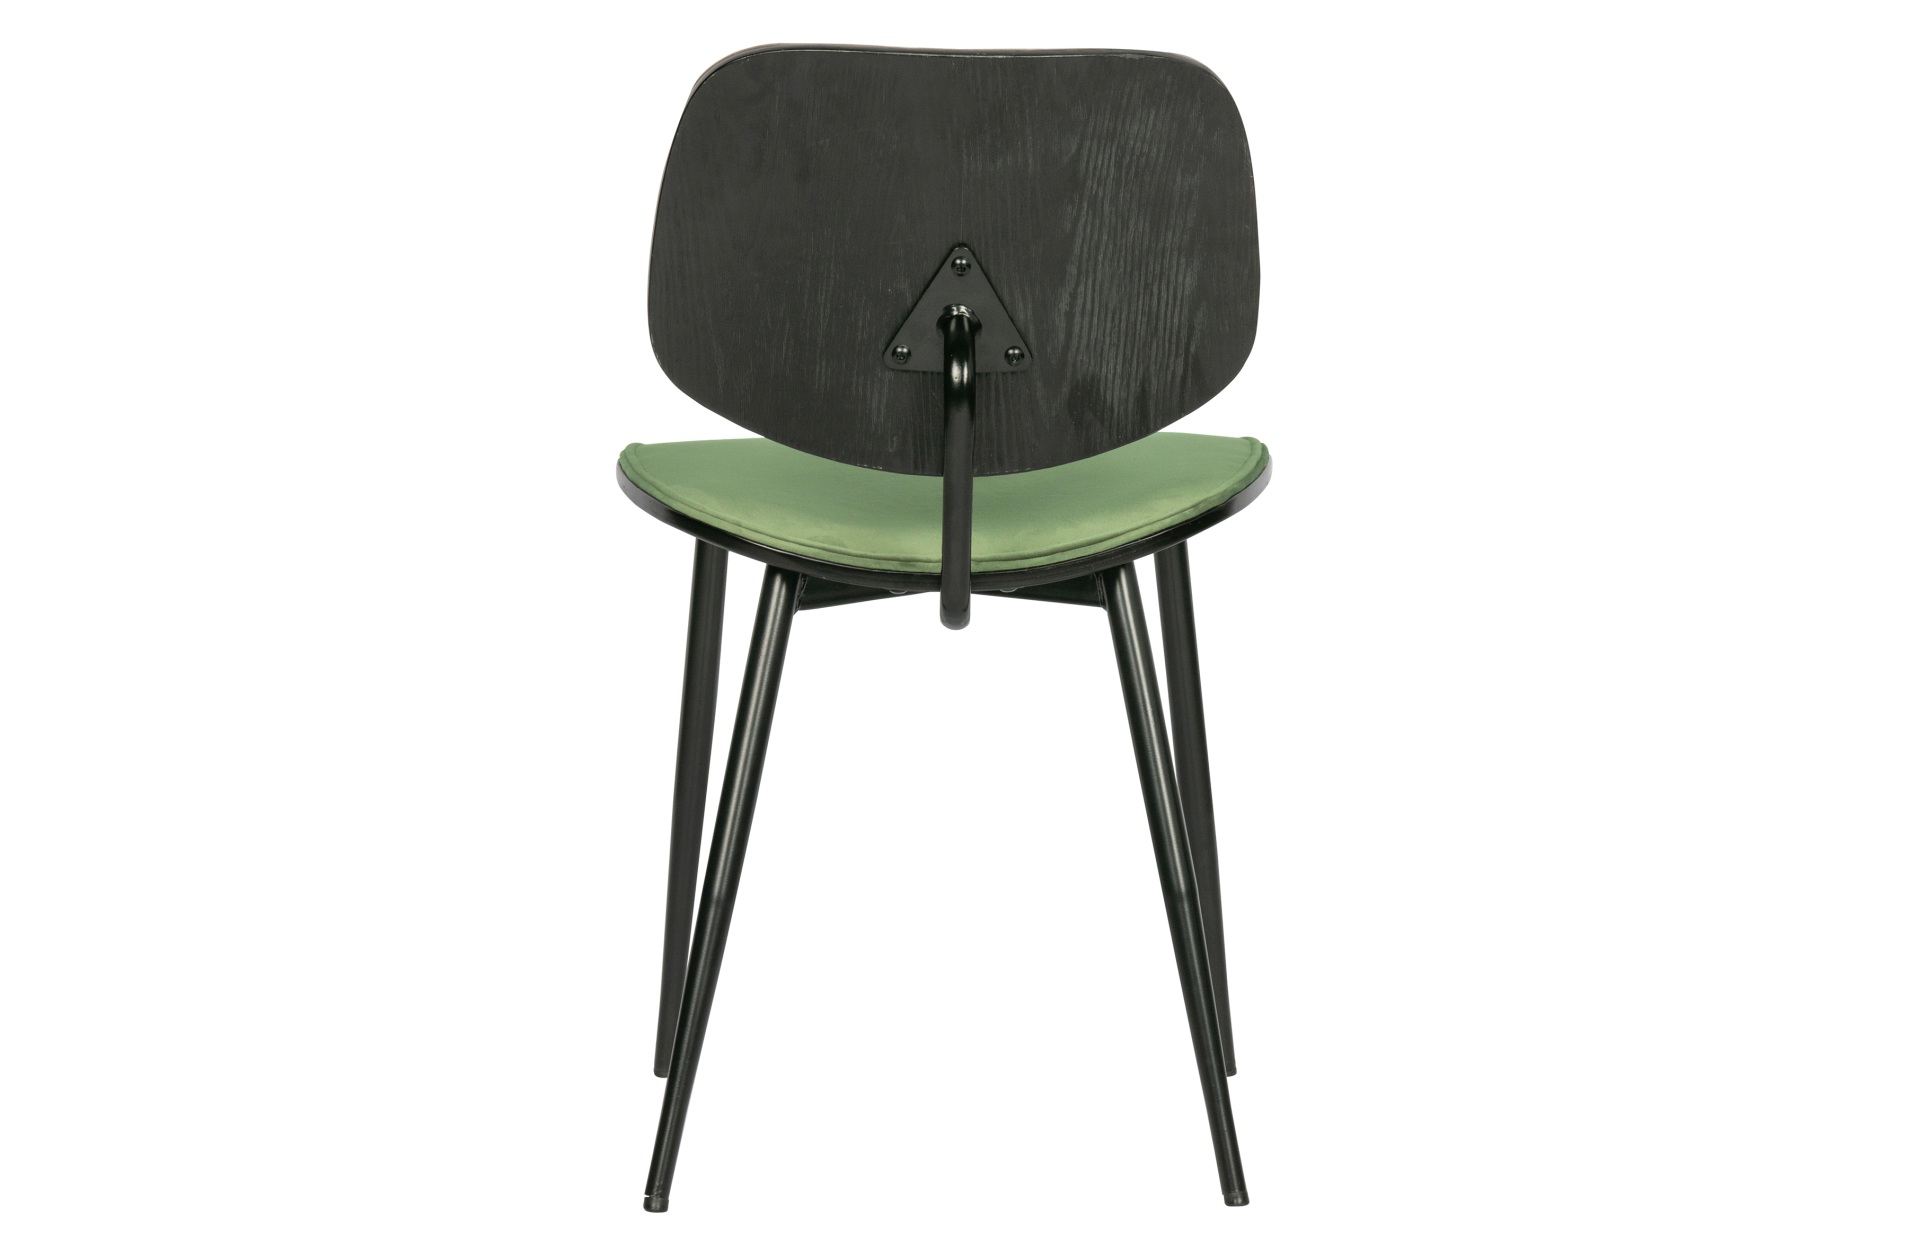 Der Esszimmerstuhl Jackie überzeugt mit seinem modernen Design. Gefertigt wurde er aus Samt, welches einen grünen Farbton besitzt. Das Gestell ist aus Metall und hat eine schwarze Farbe. Der Stuhl verfügt über eine Sitzhöhe von 47 cm.